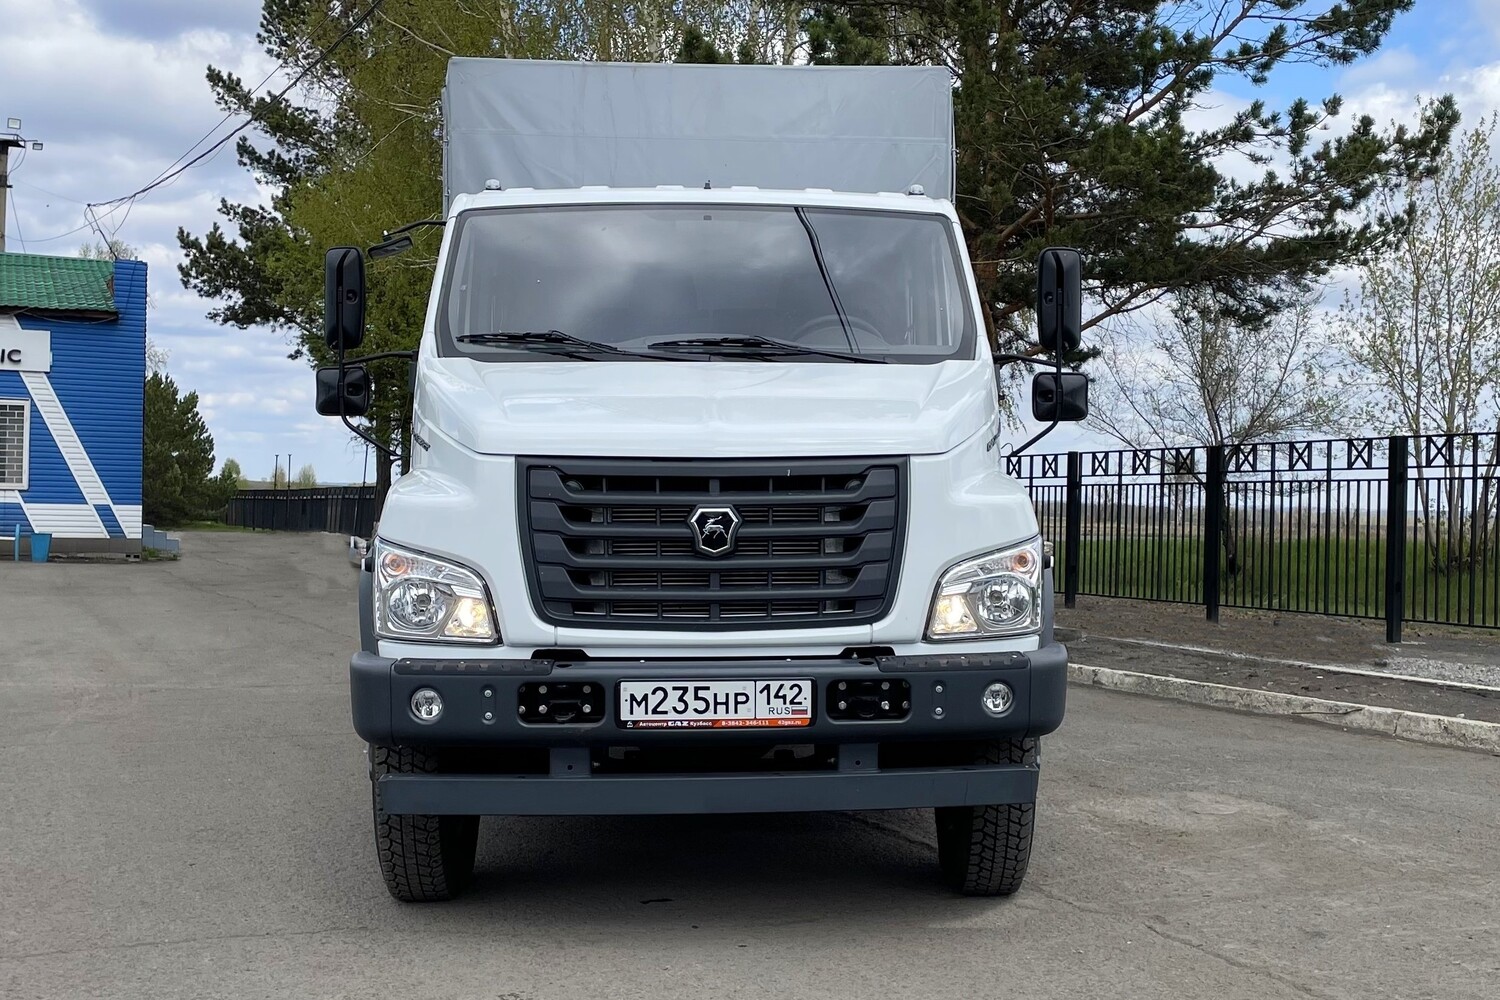 Новый российский грузовой фургон будет доставлять ремонтников Белтранса на угольные предприятия компании. Стройсервис